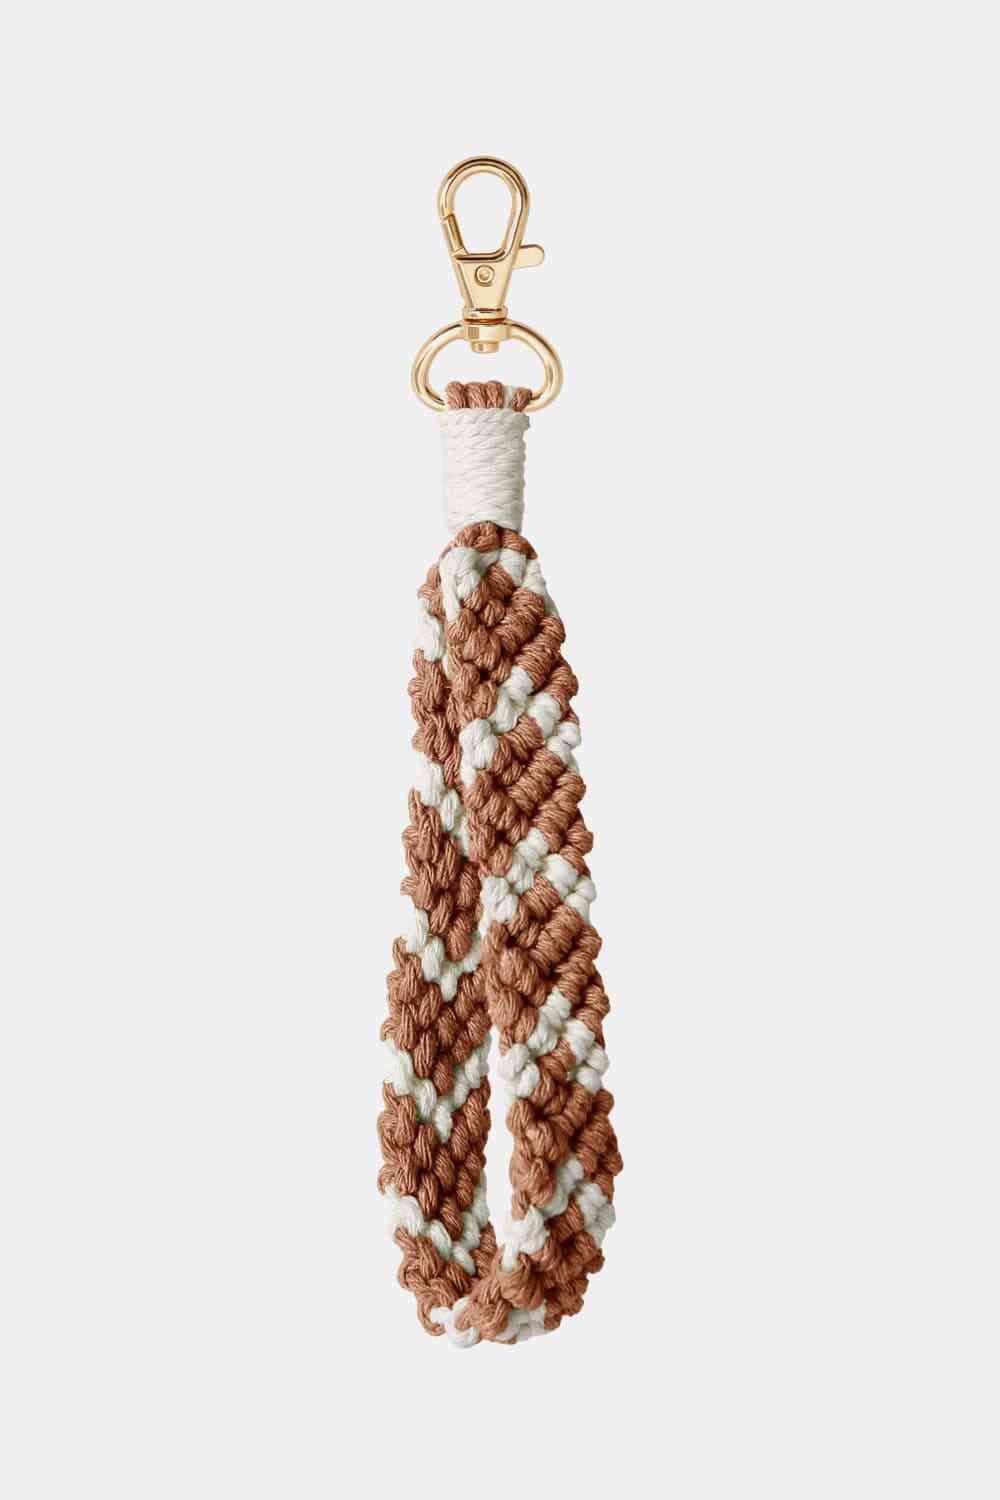 Macrame Wristlet Key Chain